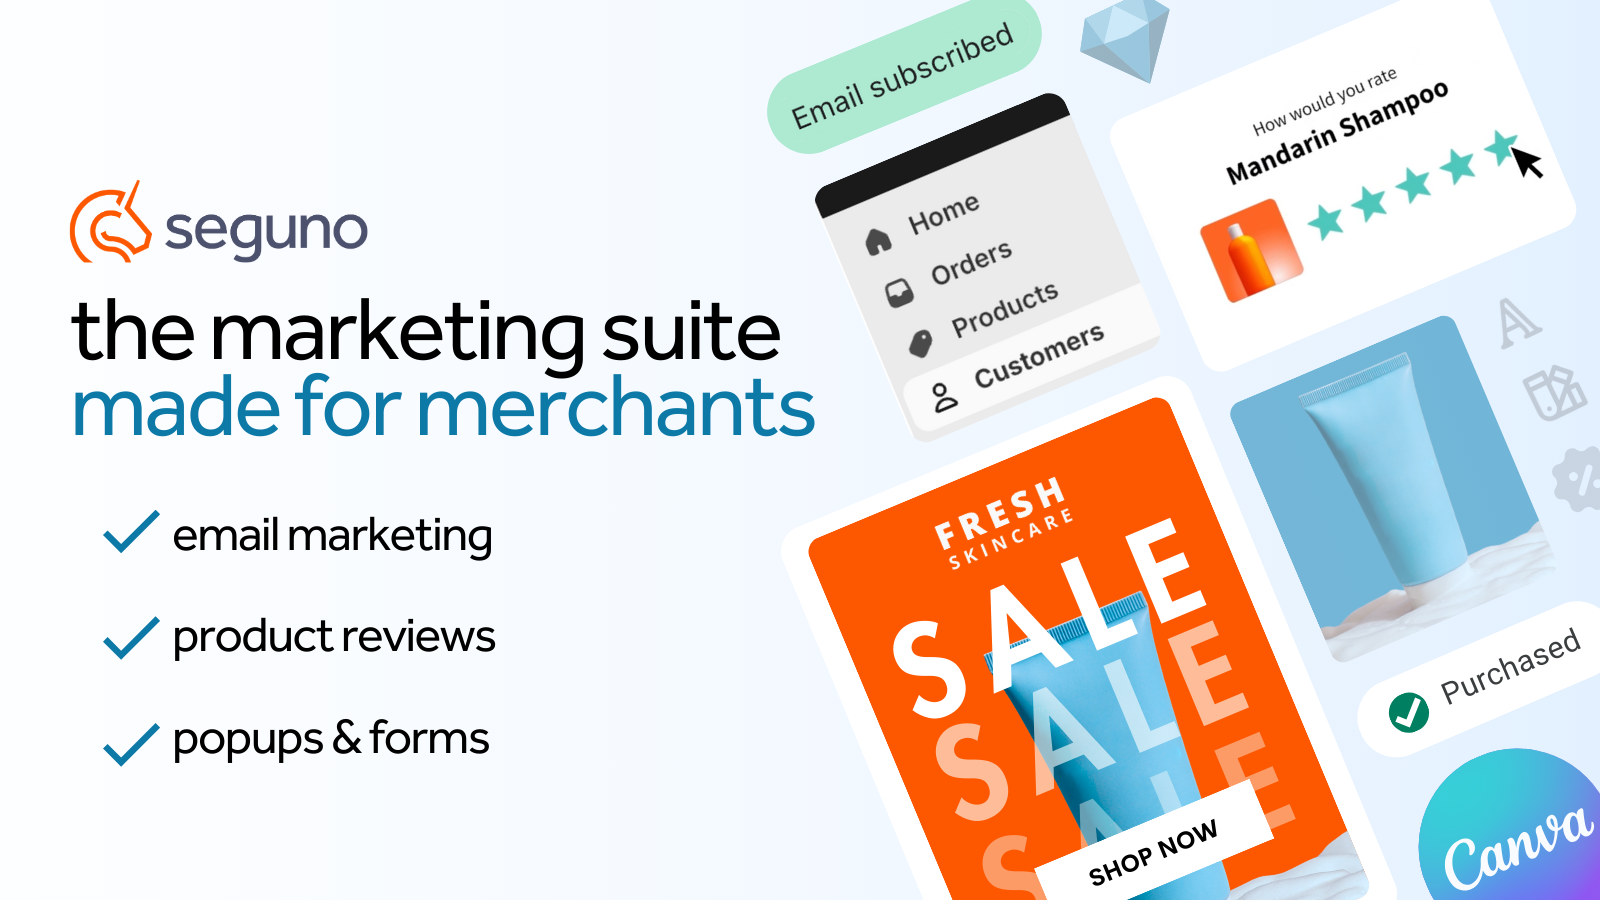 Suite de Marketing de Seguno: marketing por correo electrónico, reseñas de productos, popups